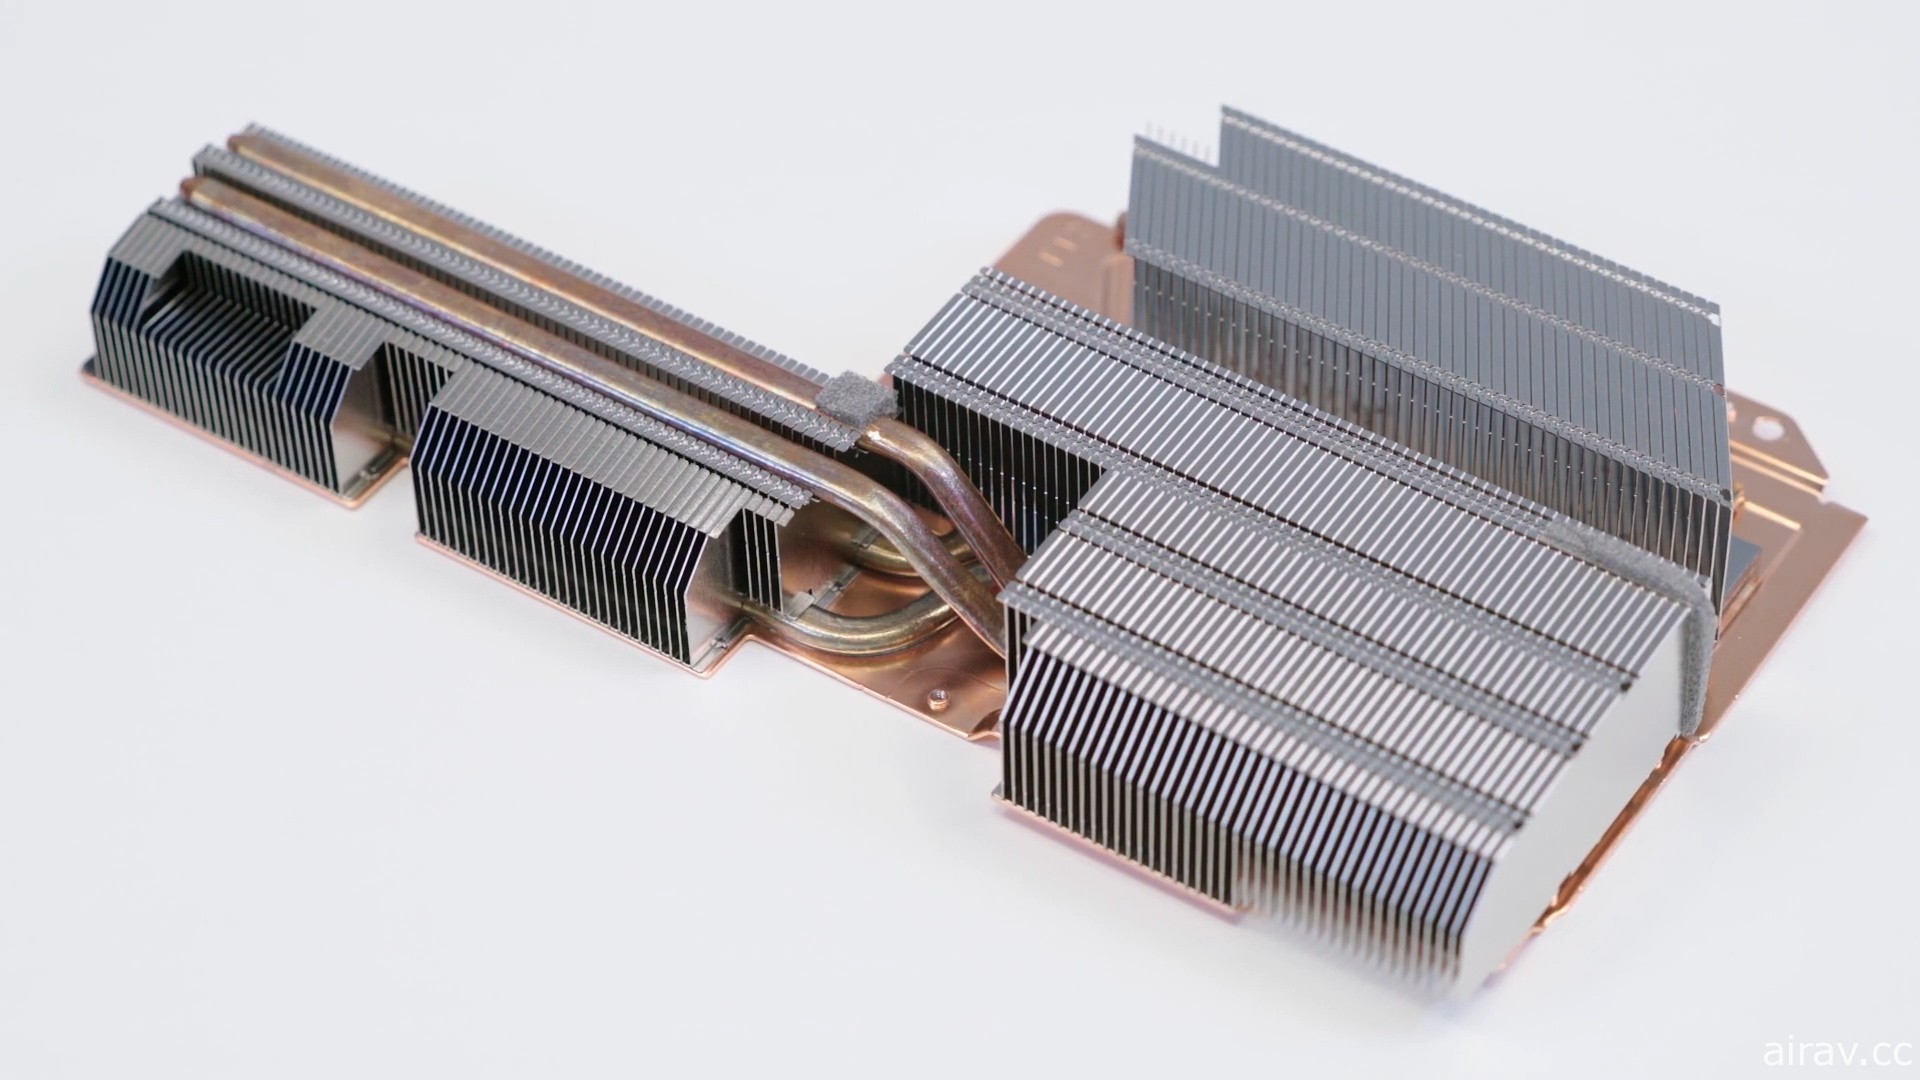 SIE 硬體設計主管透露 PS5 內部設計秘辛 導入液態金屬材質降低整體散熱成本